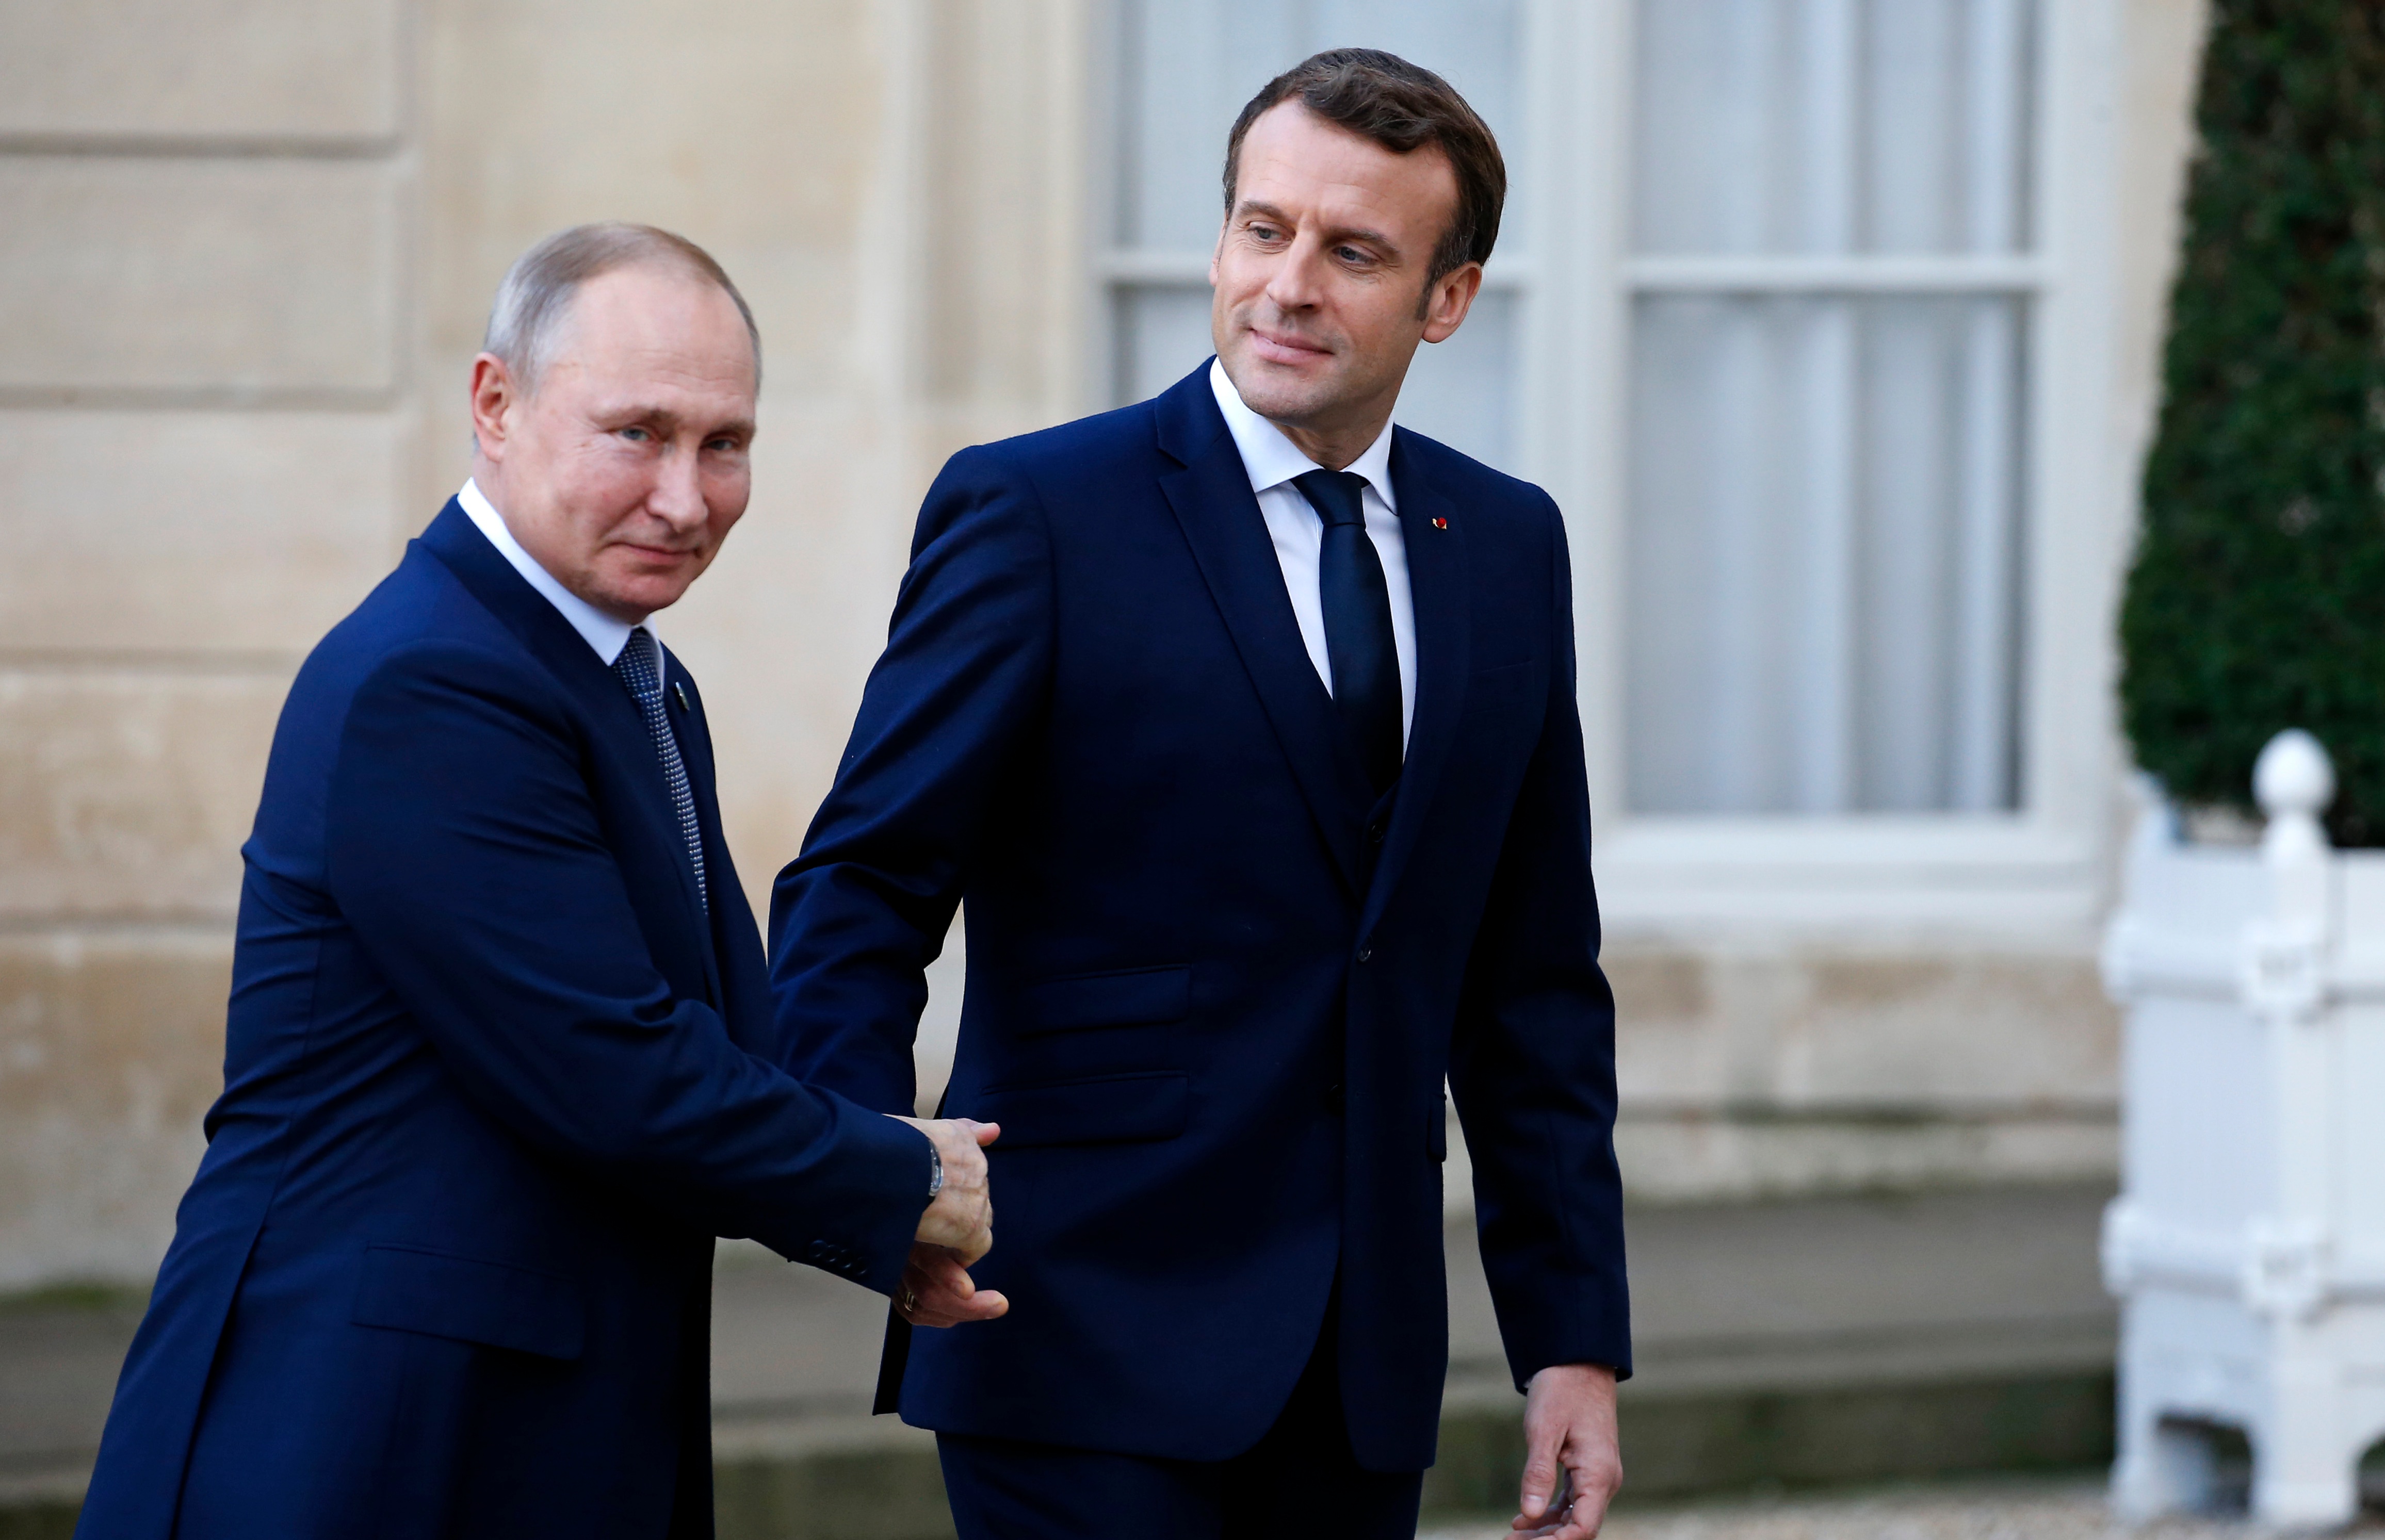 Владимир Путин и Эммануэль Макрон в Елисейском дворце, 2019
&nbsp;